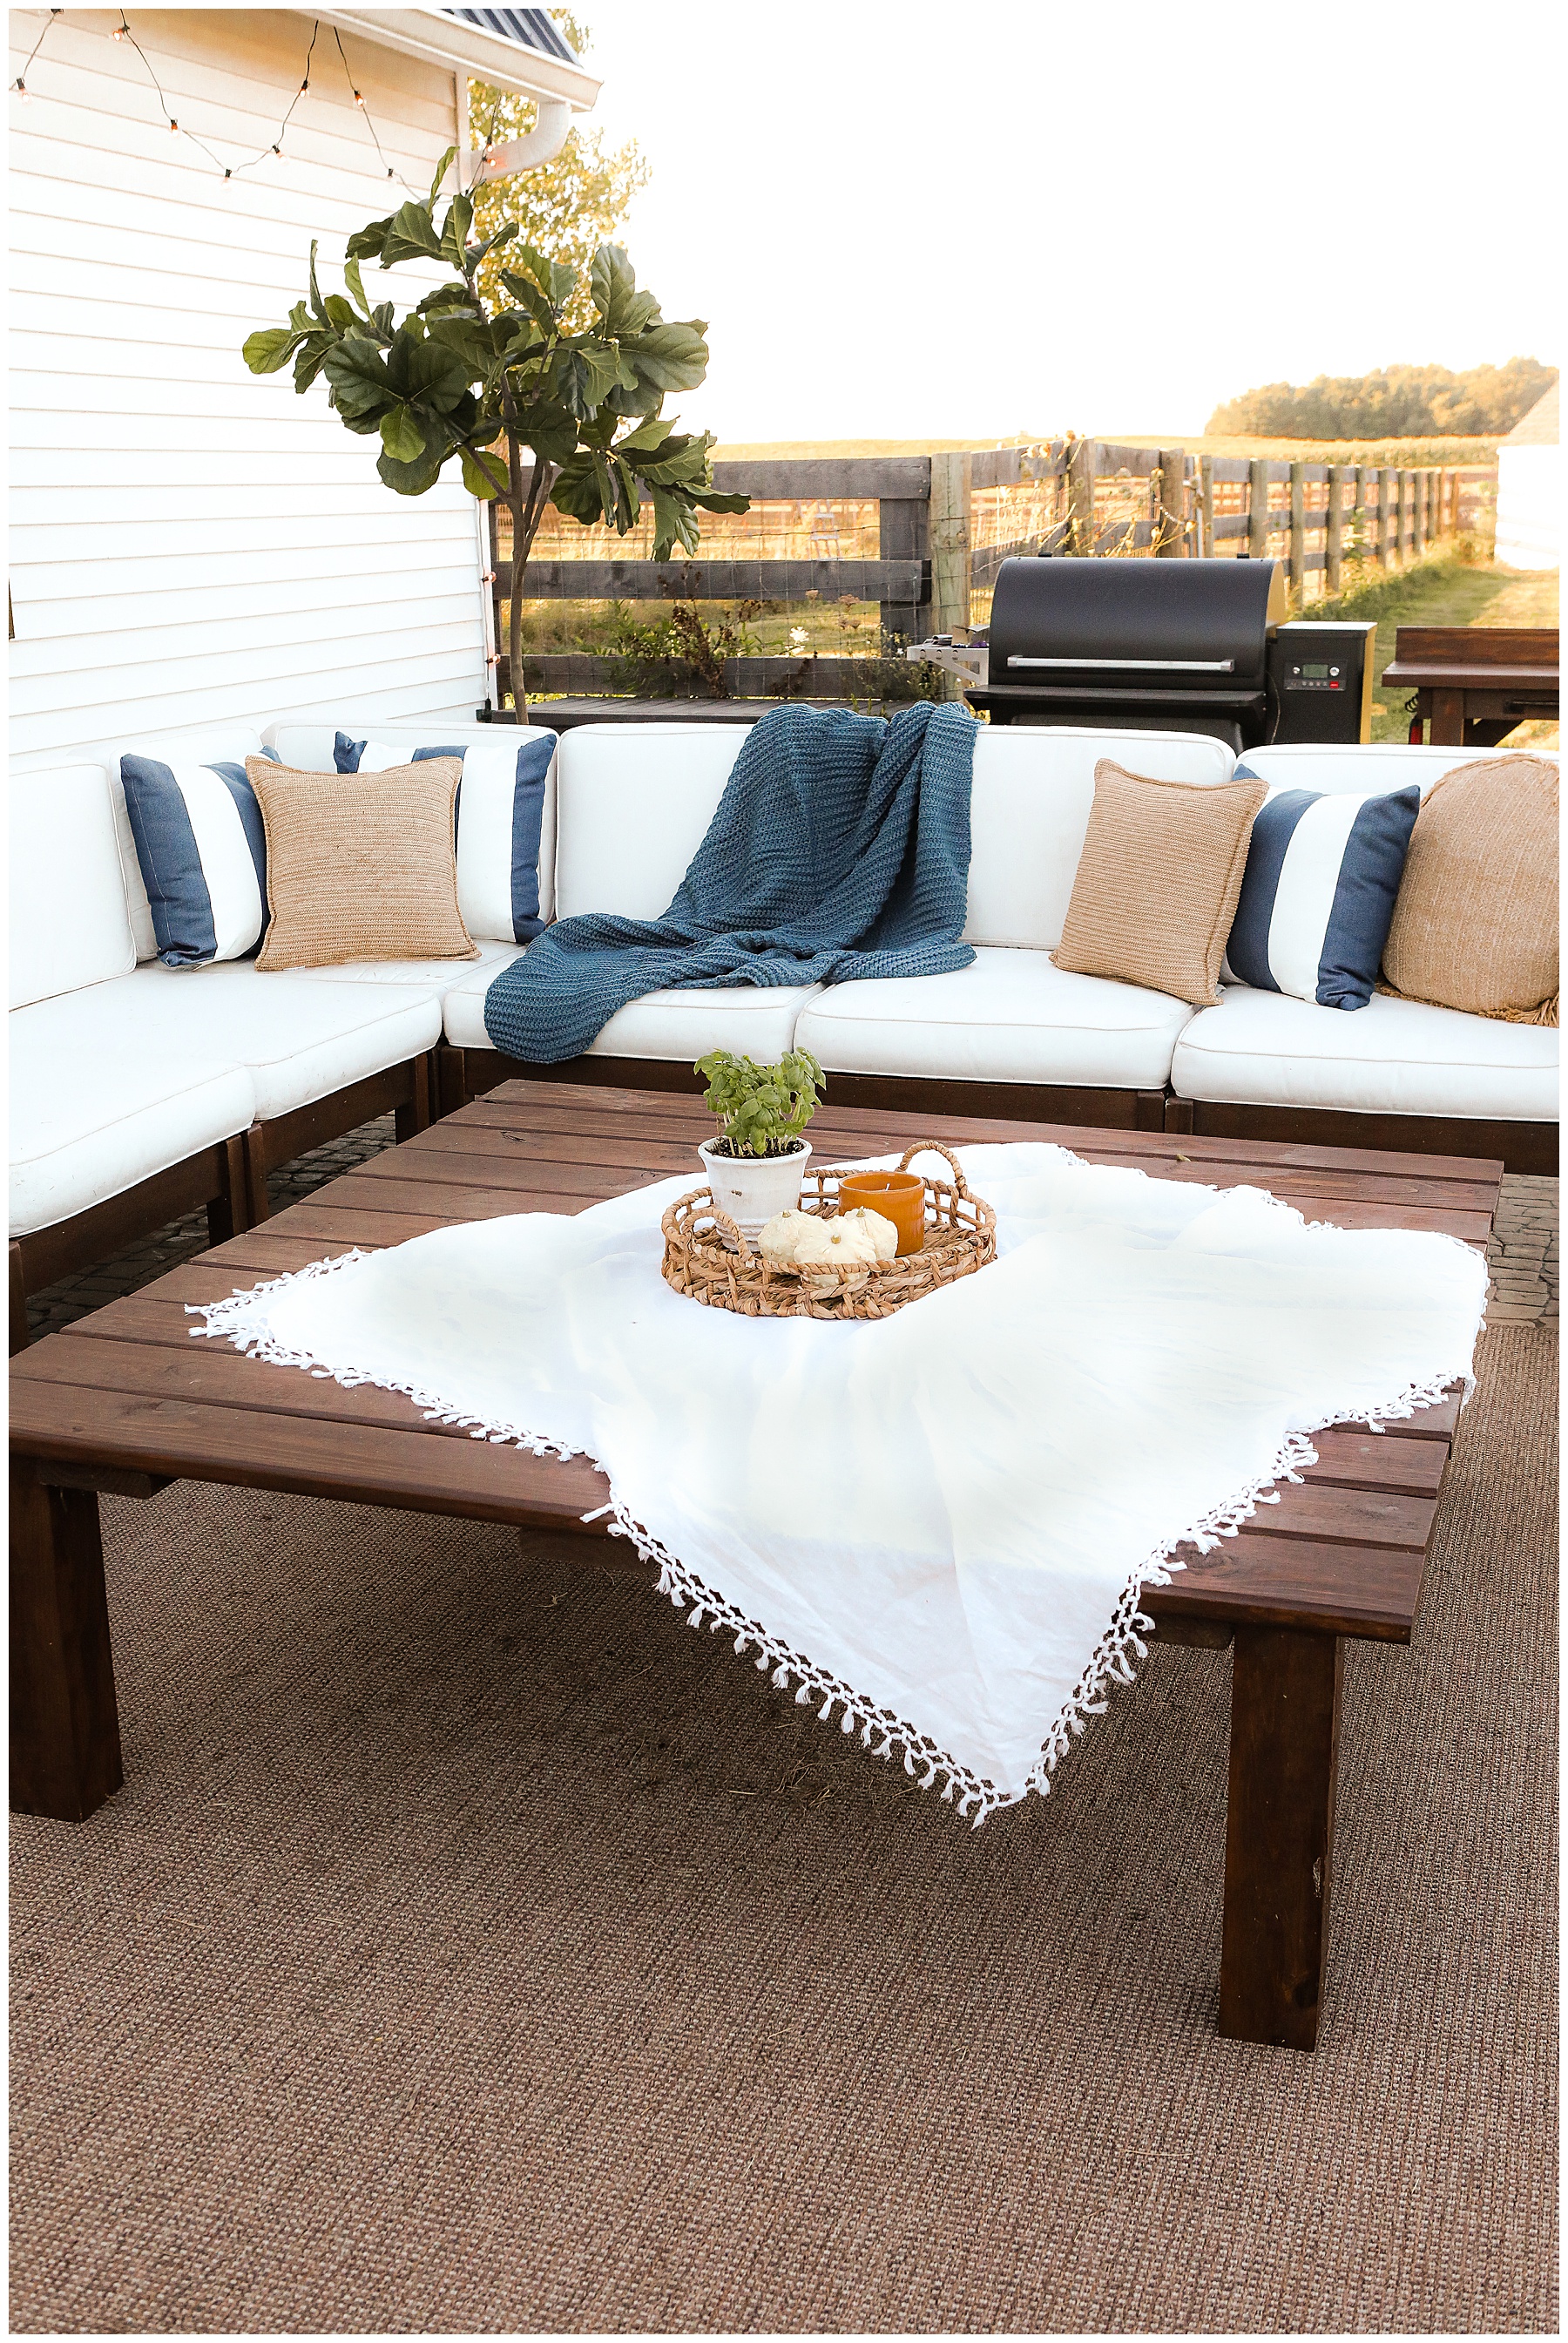 DIY outdoor coffee table